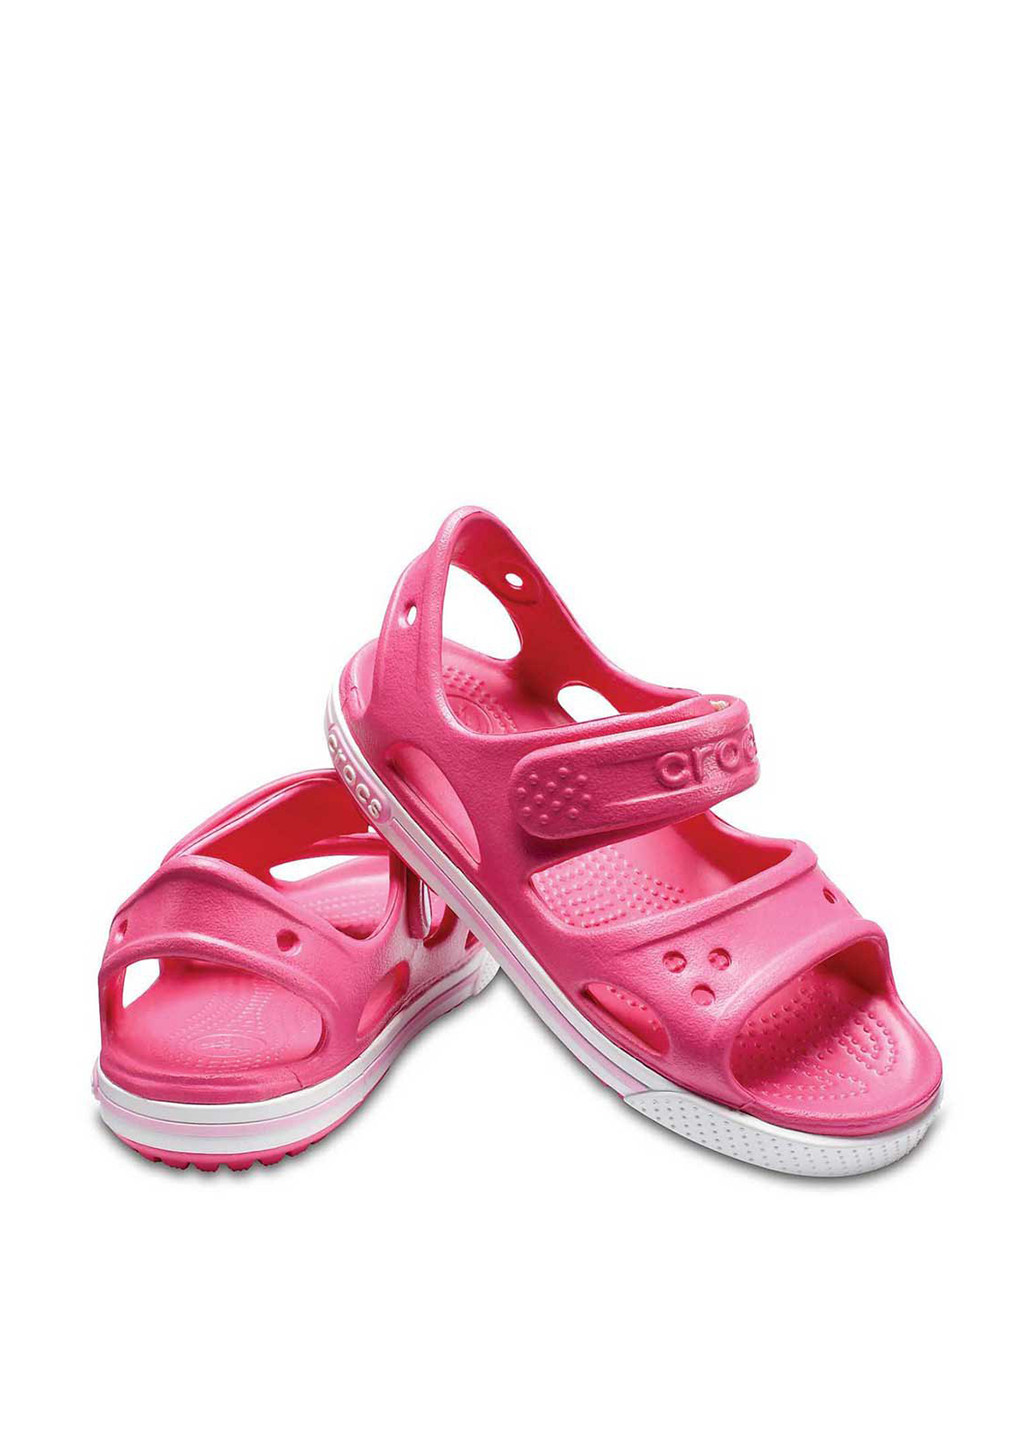 Розовые пляжные сандалии Crocs на липучке